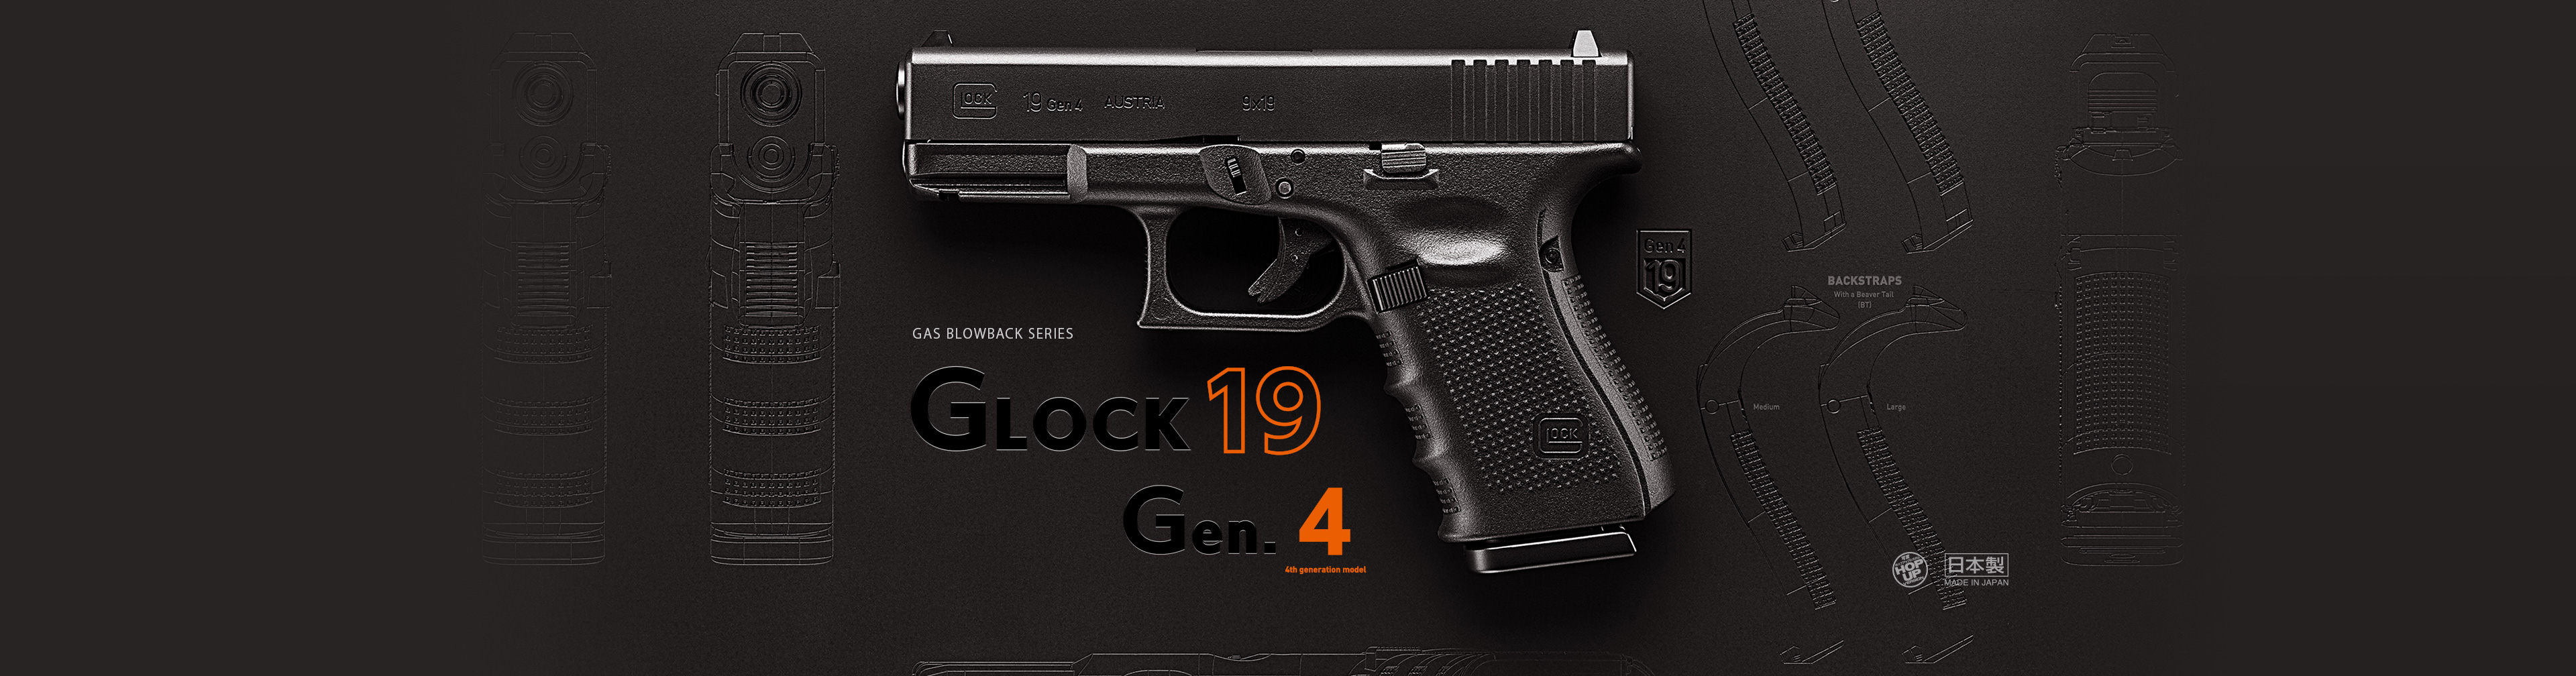 グロック19 Gen.4